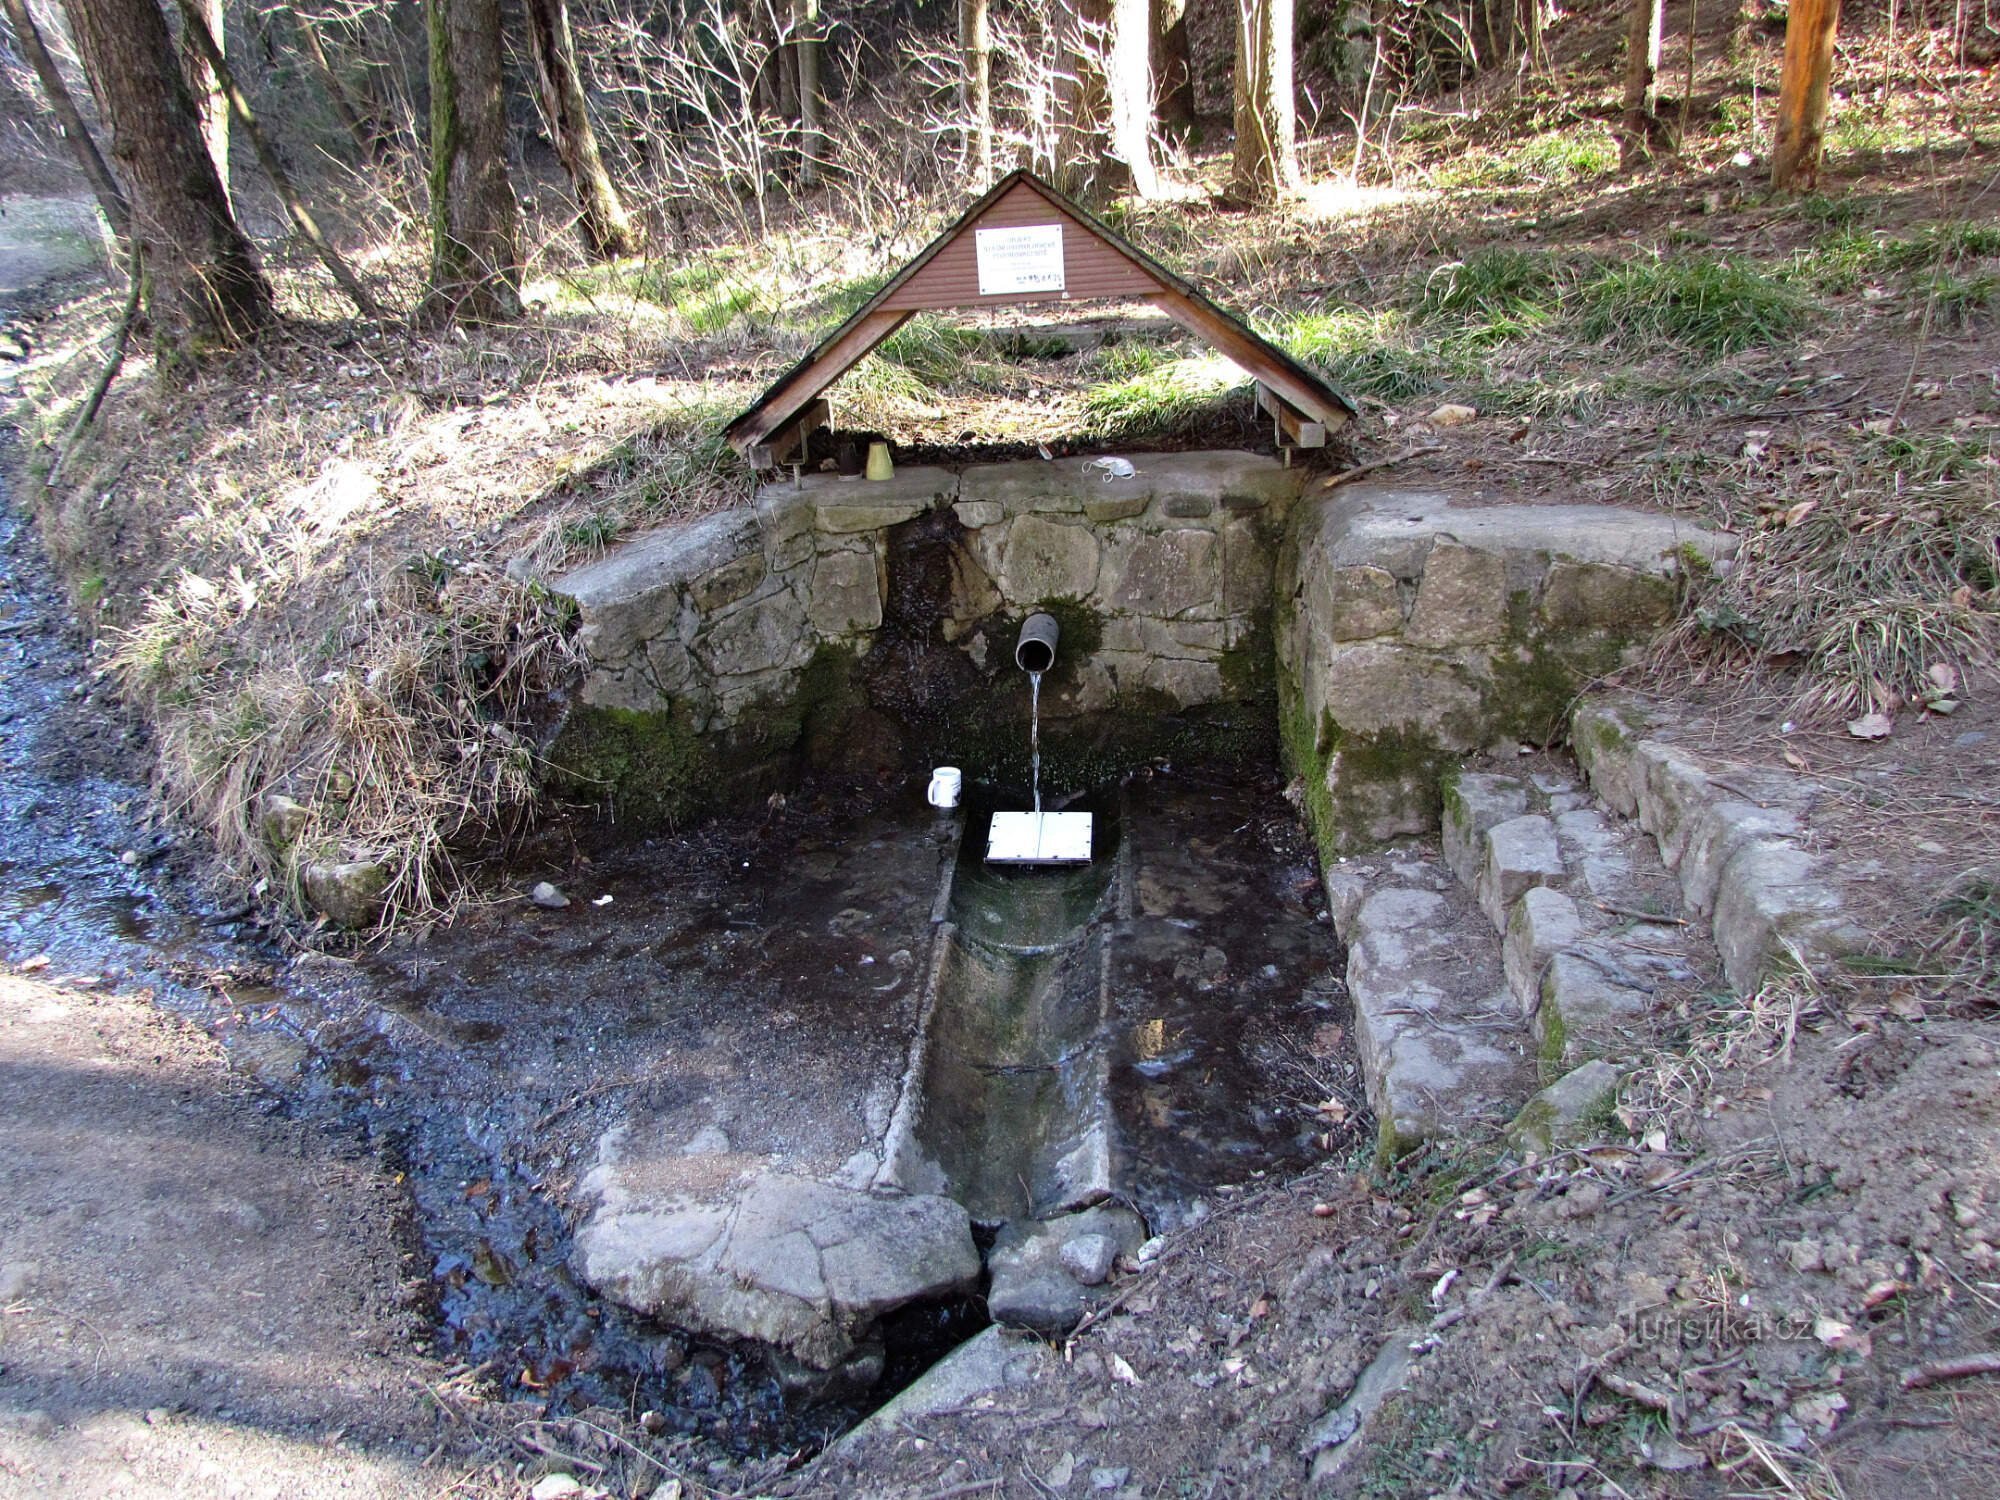 Lukáščen well